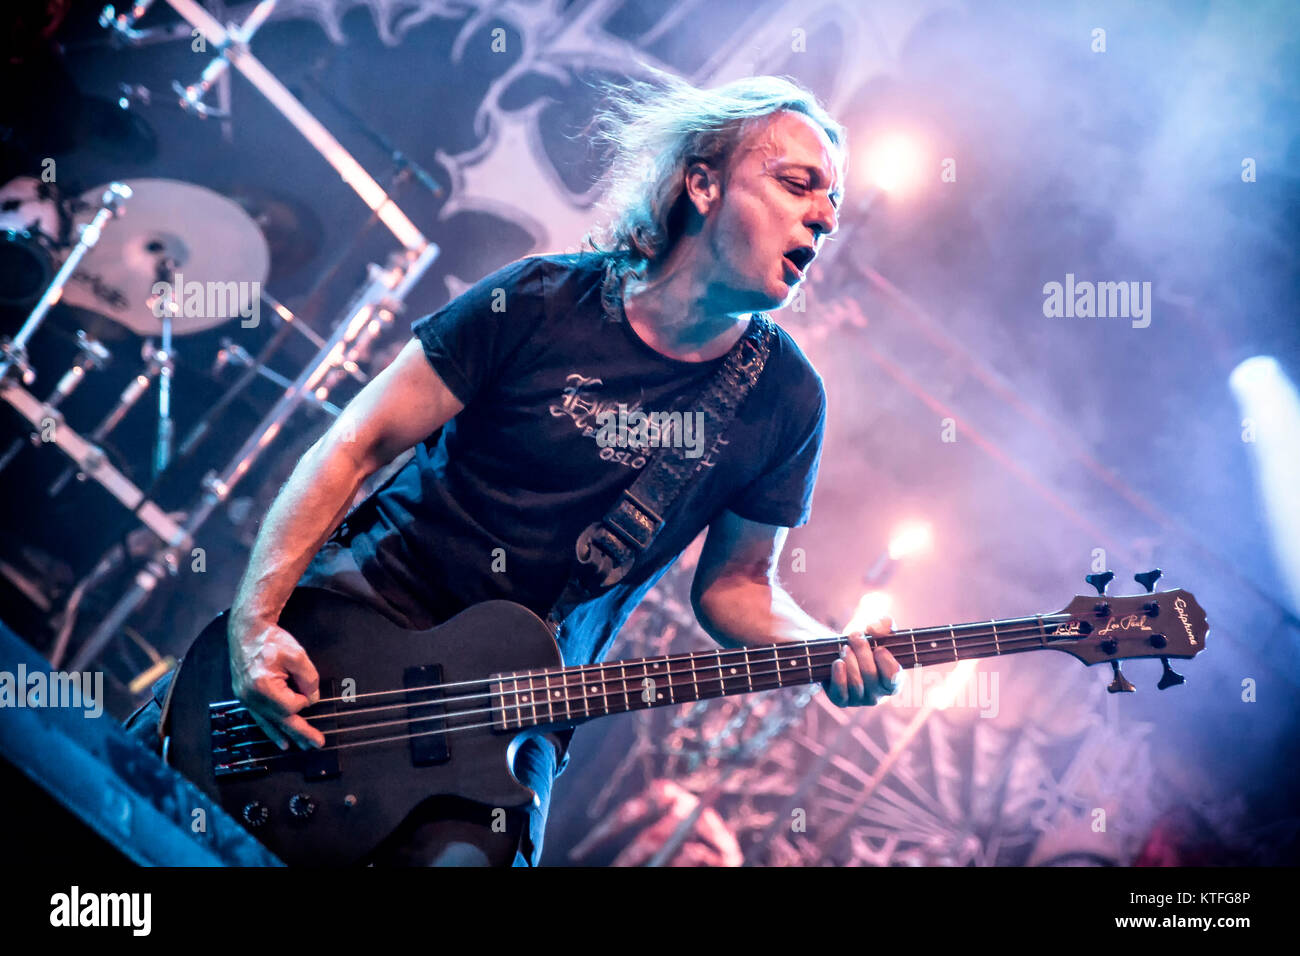 Die norwegische Black-Metal-Band Mayhem führt ein Live Konzert in der norwegischen Musik Festival Øyafestivalen 2014. Hier Bass Player Necrobutcher wird gesehen, live auf der Bühne. Norwegen, 08.08.2014. Stockfoto